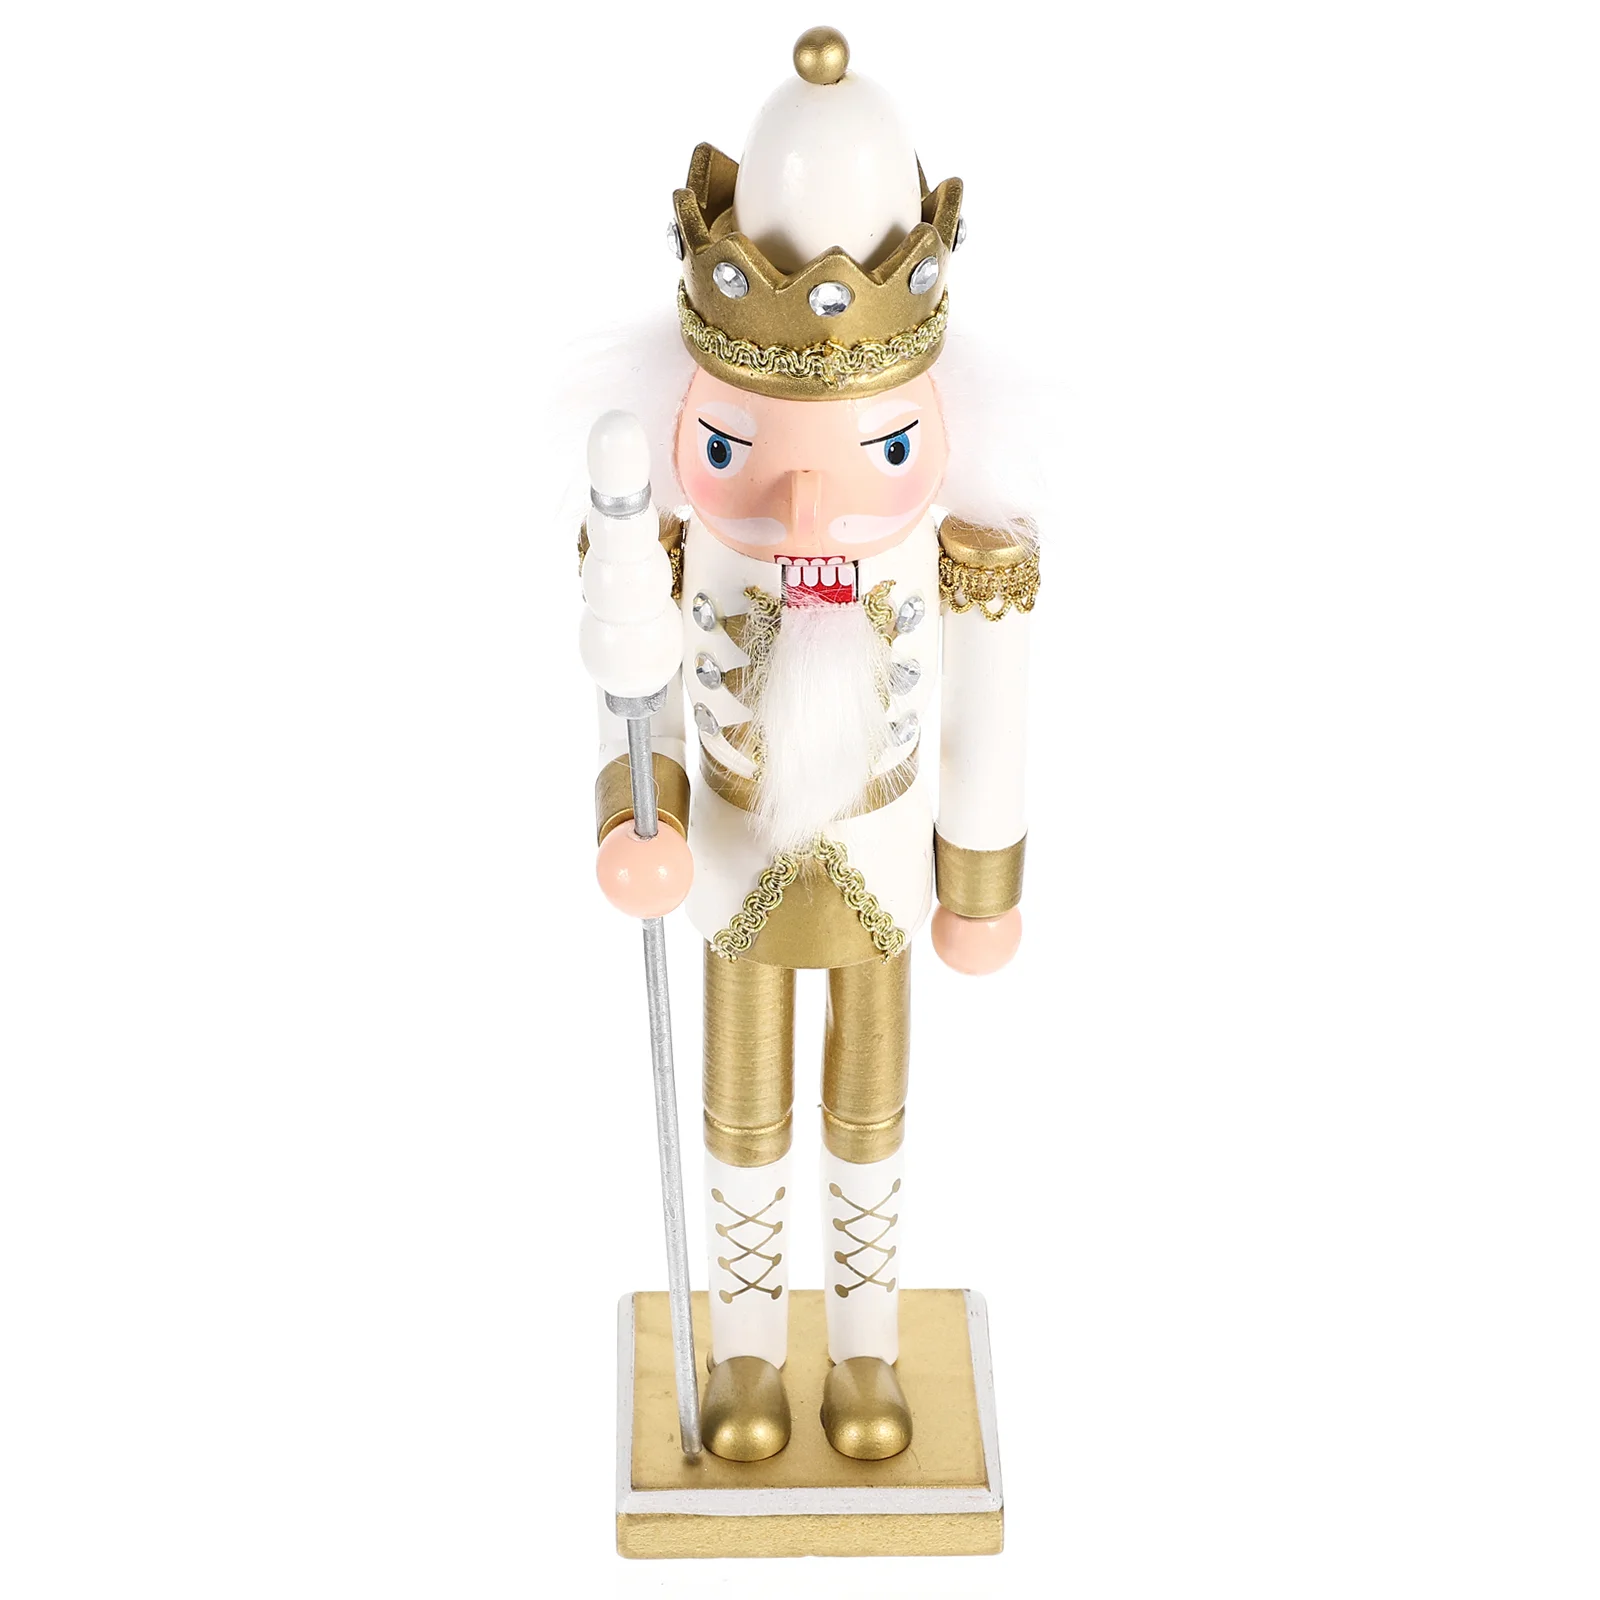 

Christmas Wooden Cartoon Soldier Nutcracker Adorn Desktop Creative Wood Puppet Ornament